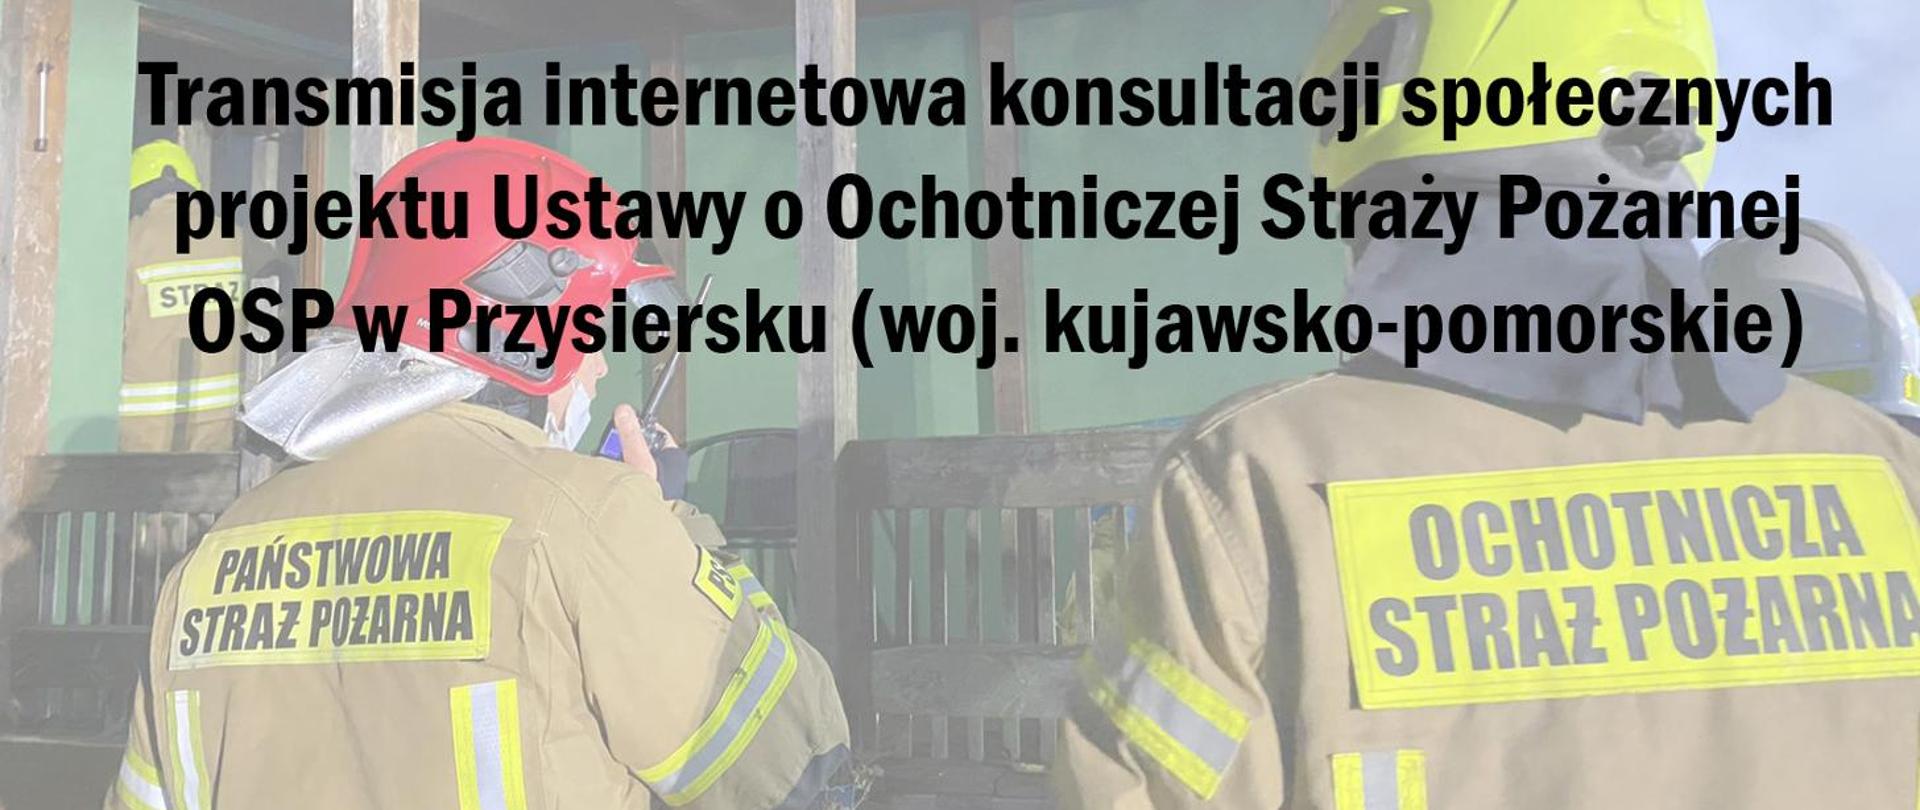 Ilustracja przedstawia duży czarny napis Transmisja internetowa konsultacji społecznych projektu ustawy o Ochotniczej Straży Pożarnej OSP w Przysiersku (woj. kujawsko-pomorskie). W tle zamglone zdjęcie przedstawiające strażaka OSP i PSP w ubraniach specjalnych.